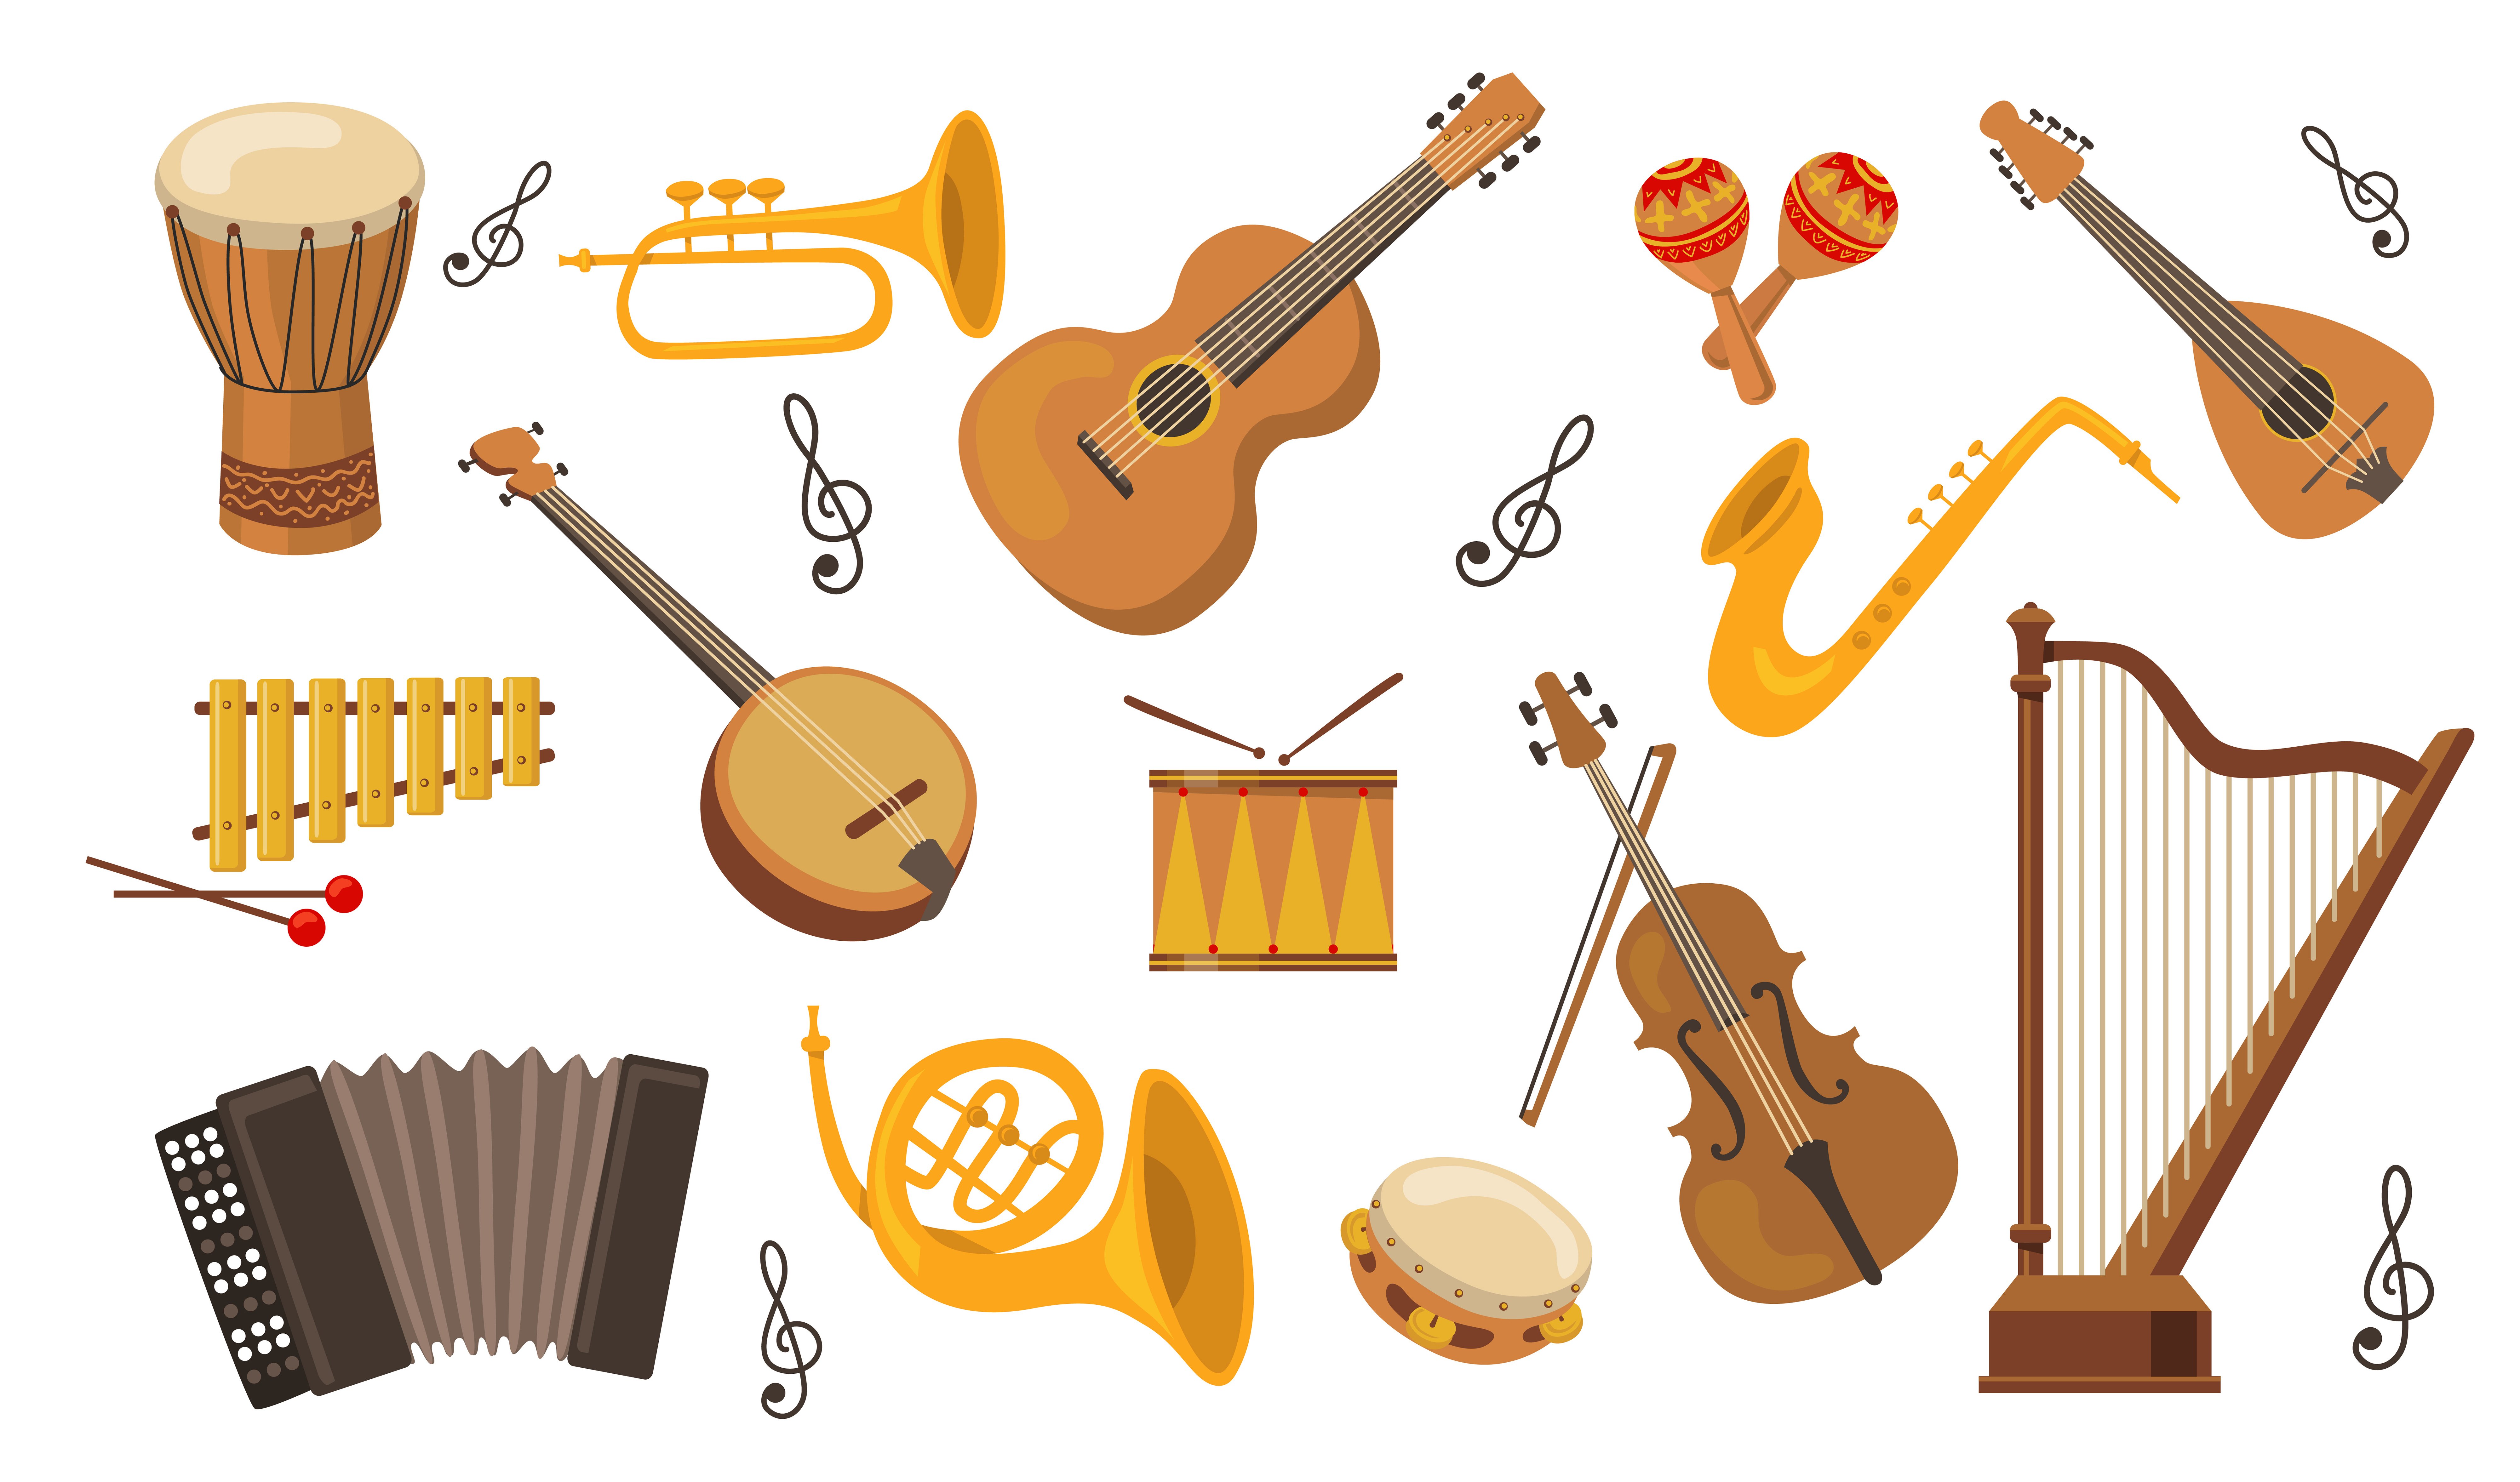 Музыкальные инструменты на слух. Музыкальные инструменты иллюстрации. Музыкальные инструменты для малышей. Изображение музыкальных инструментов для детей. Классические музыкальные инструменты.